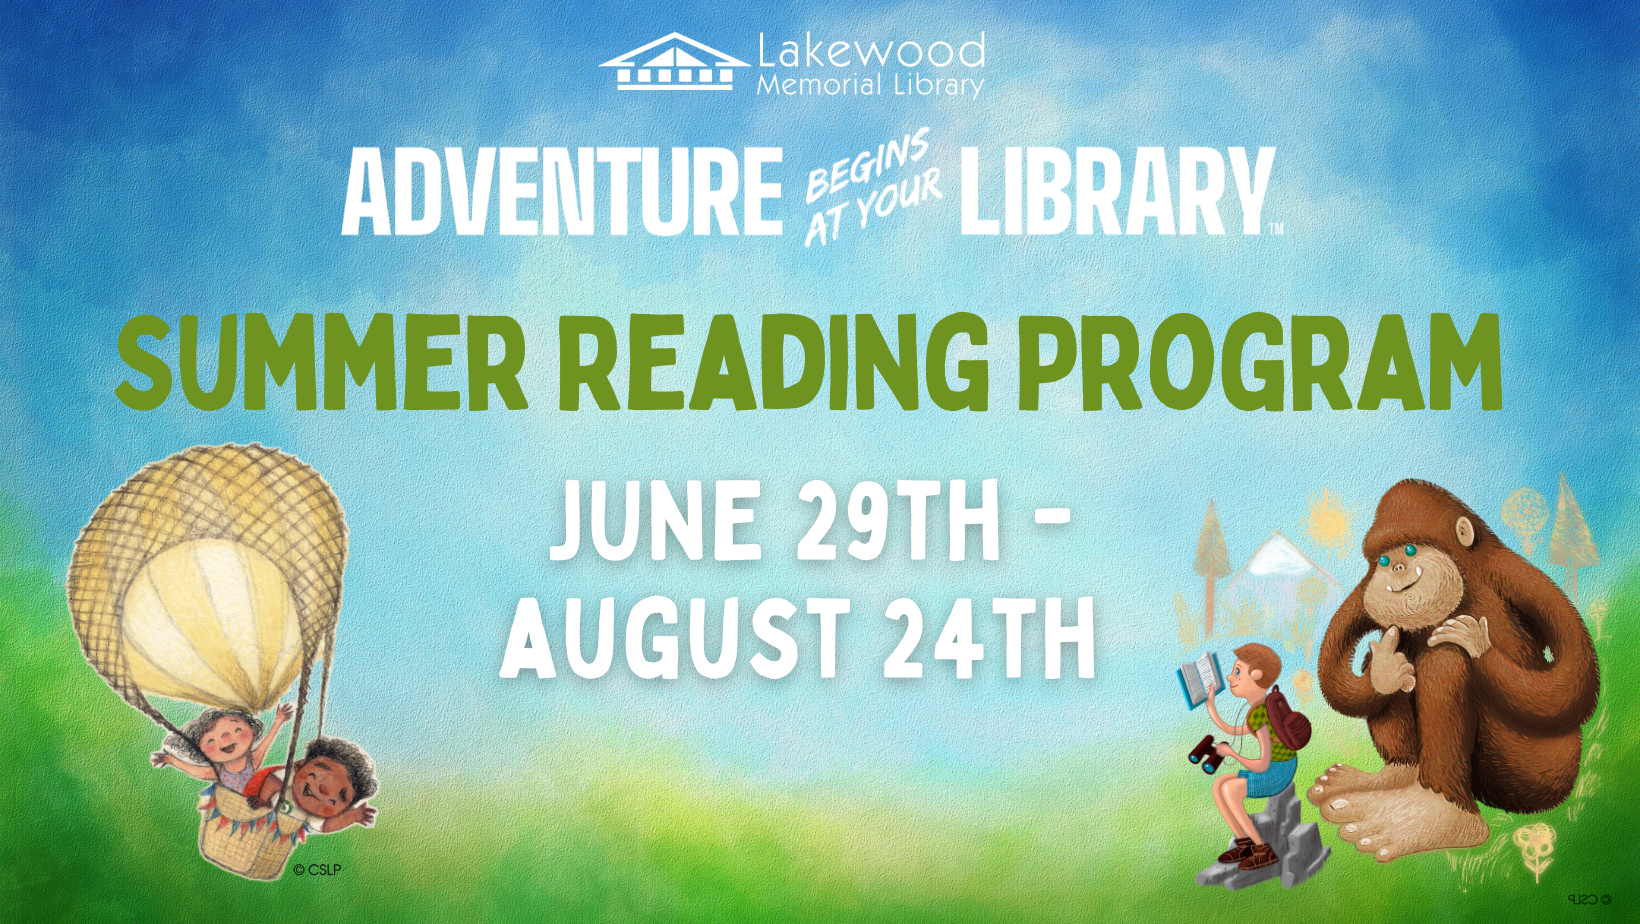 Summer Reading Program Begins June 29th